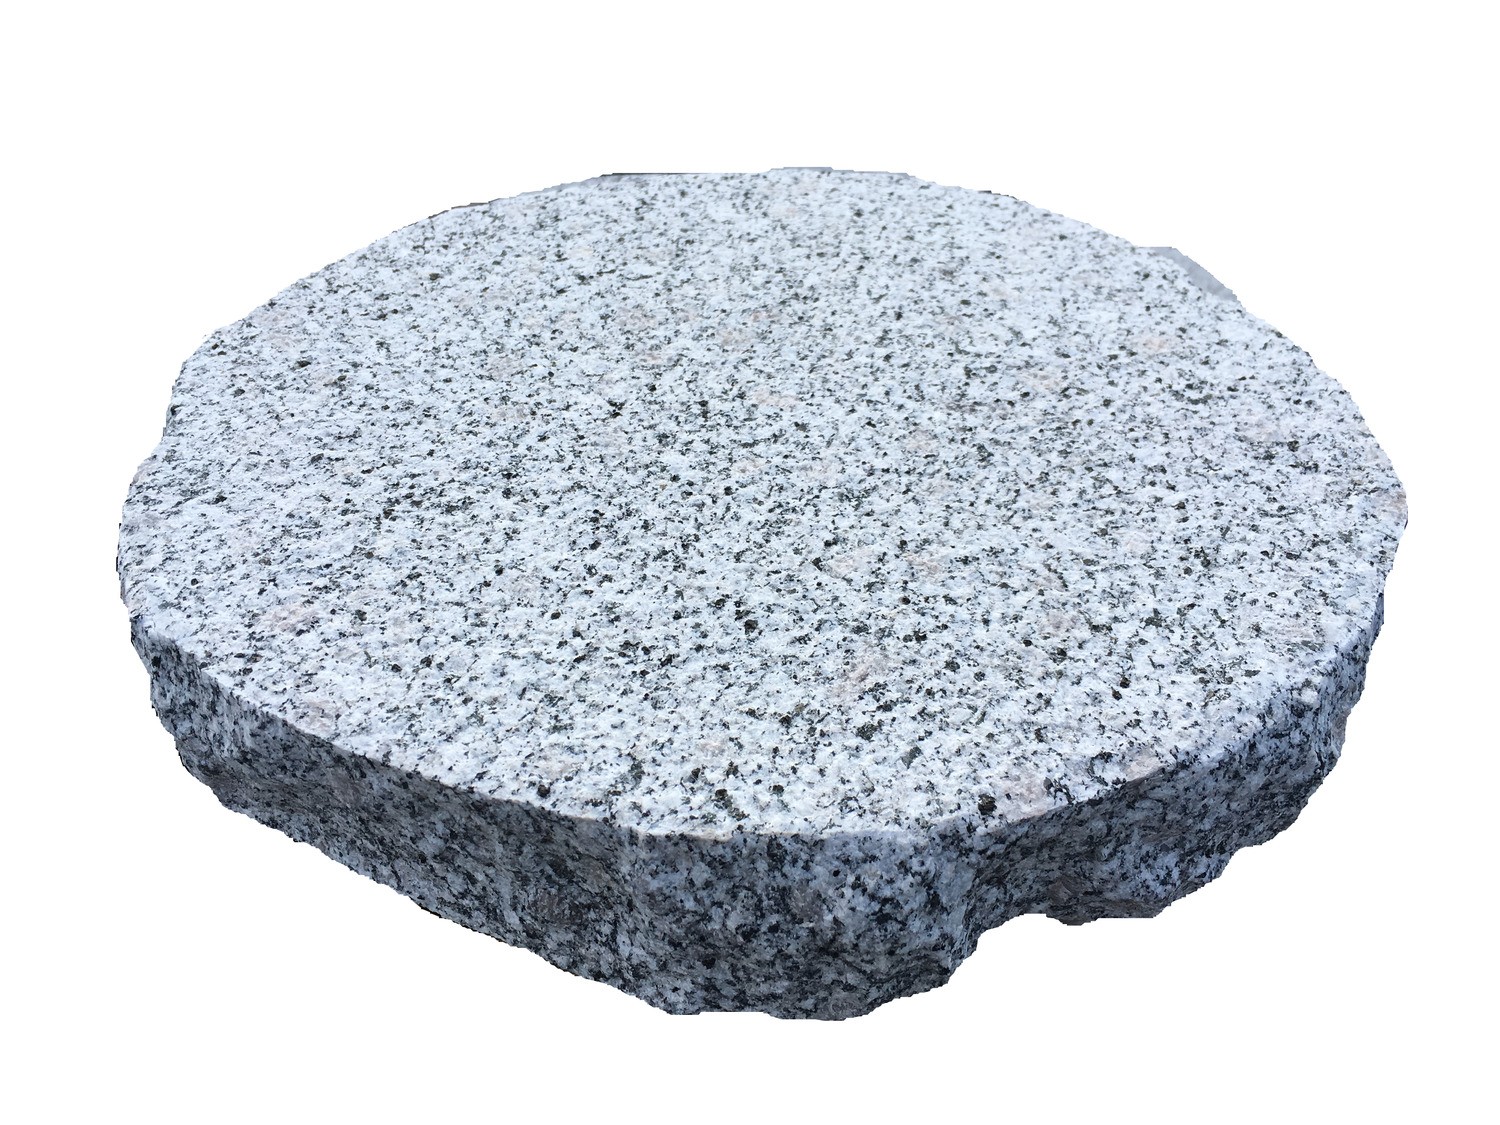 Trittplatten rund aus Granit in grau